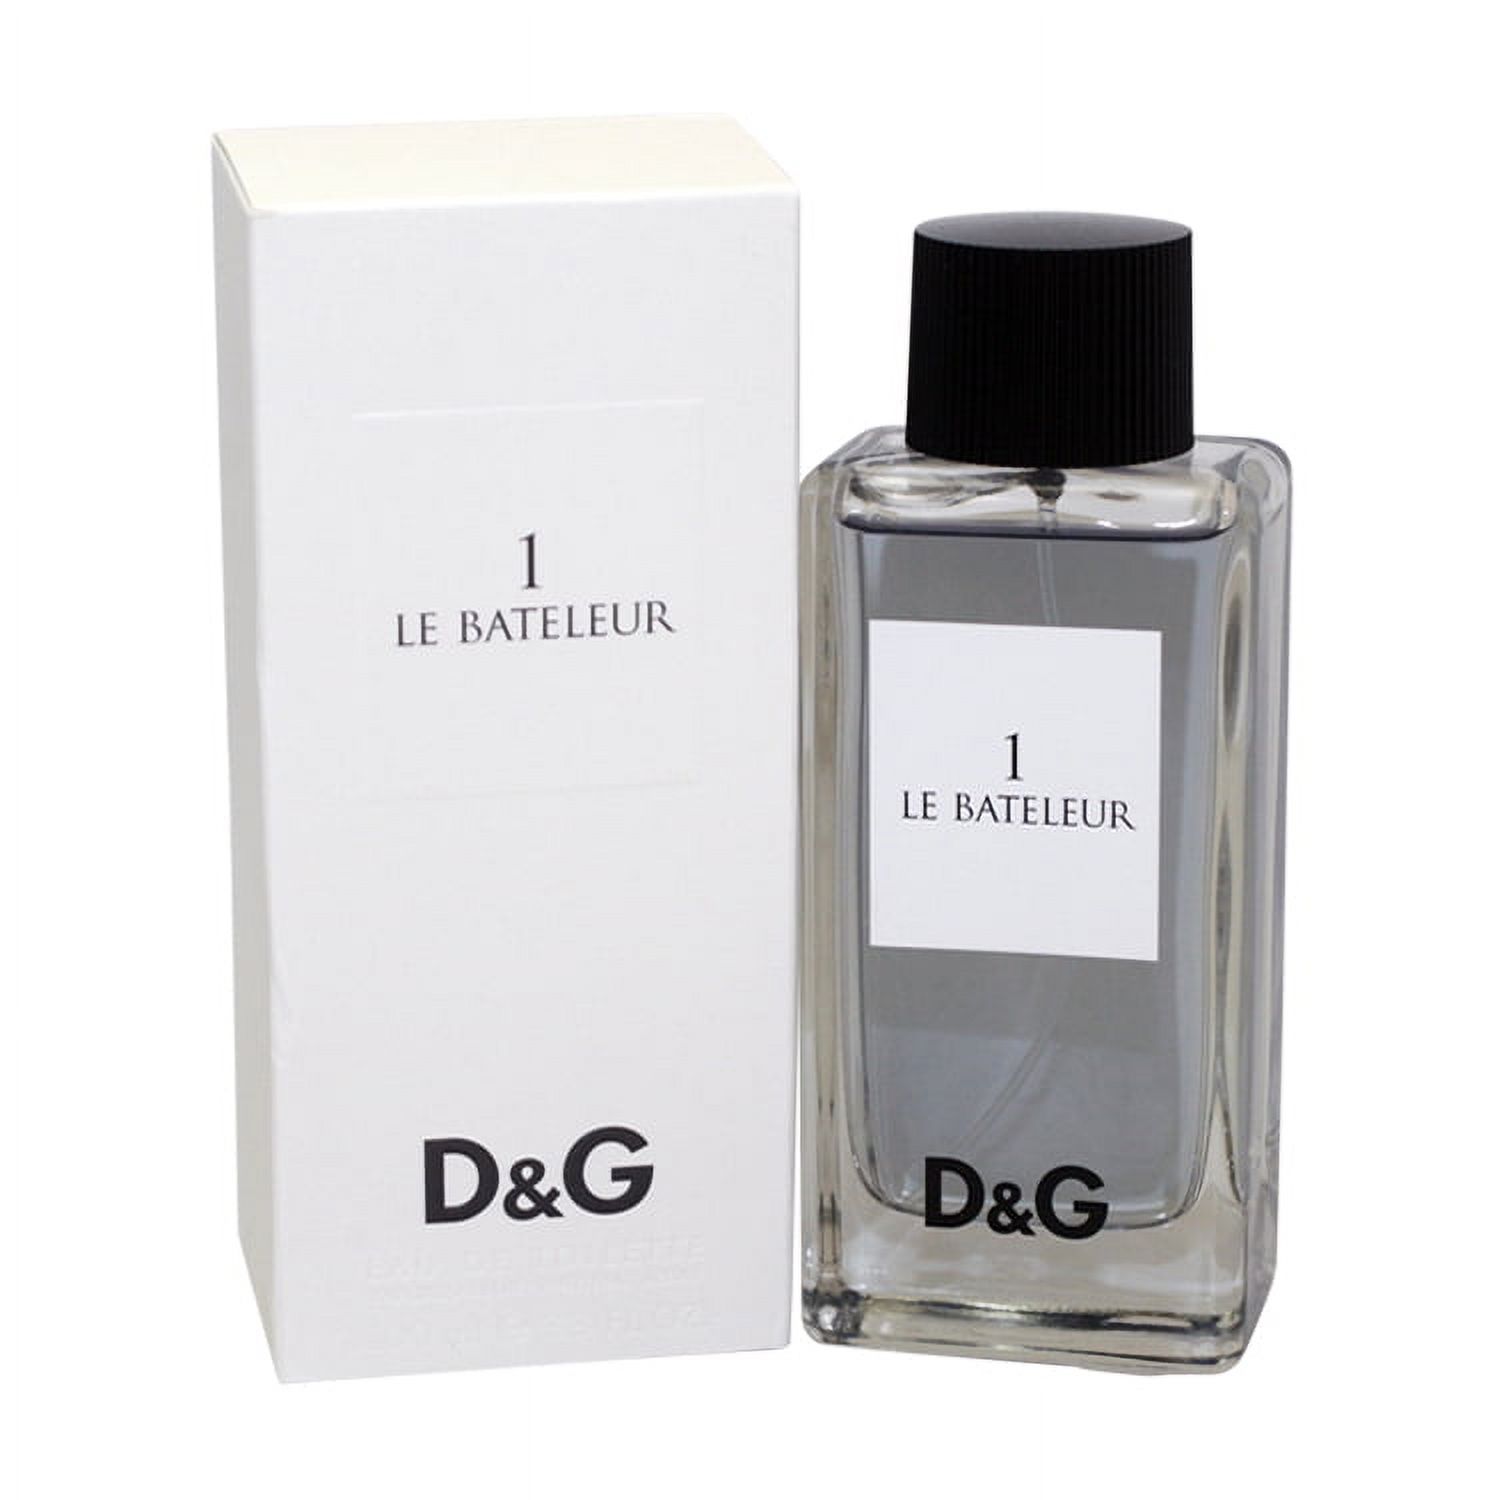 D & G 1 Le Bateleur Eau De Toilette Spray 3.3 Oz / 100 Ml for Men by Dolce & Gabbana - image 1 of 2